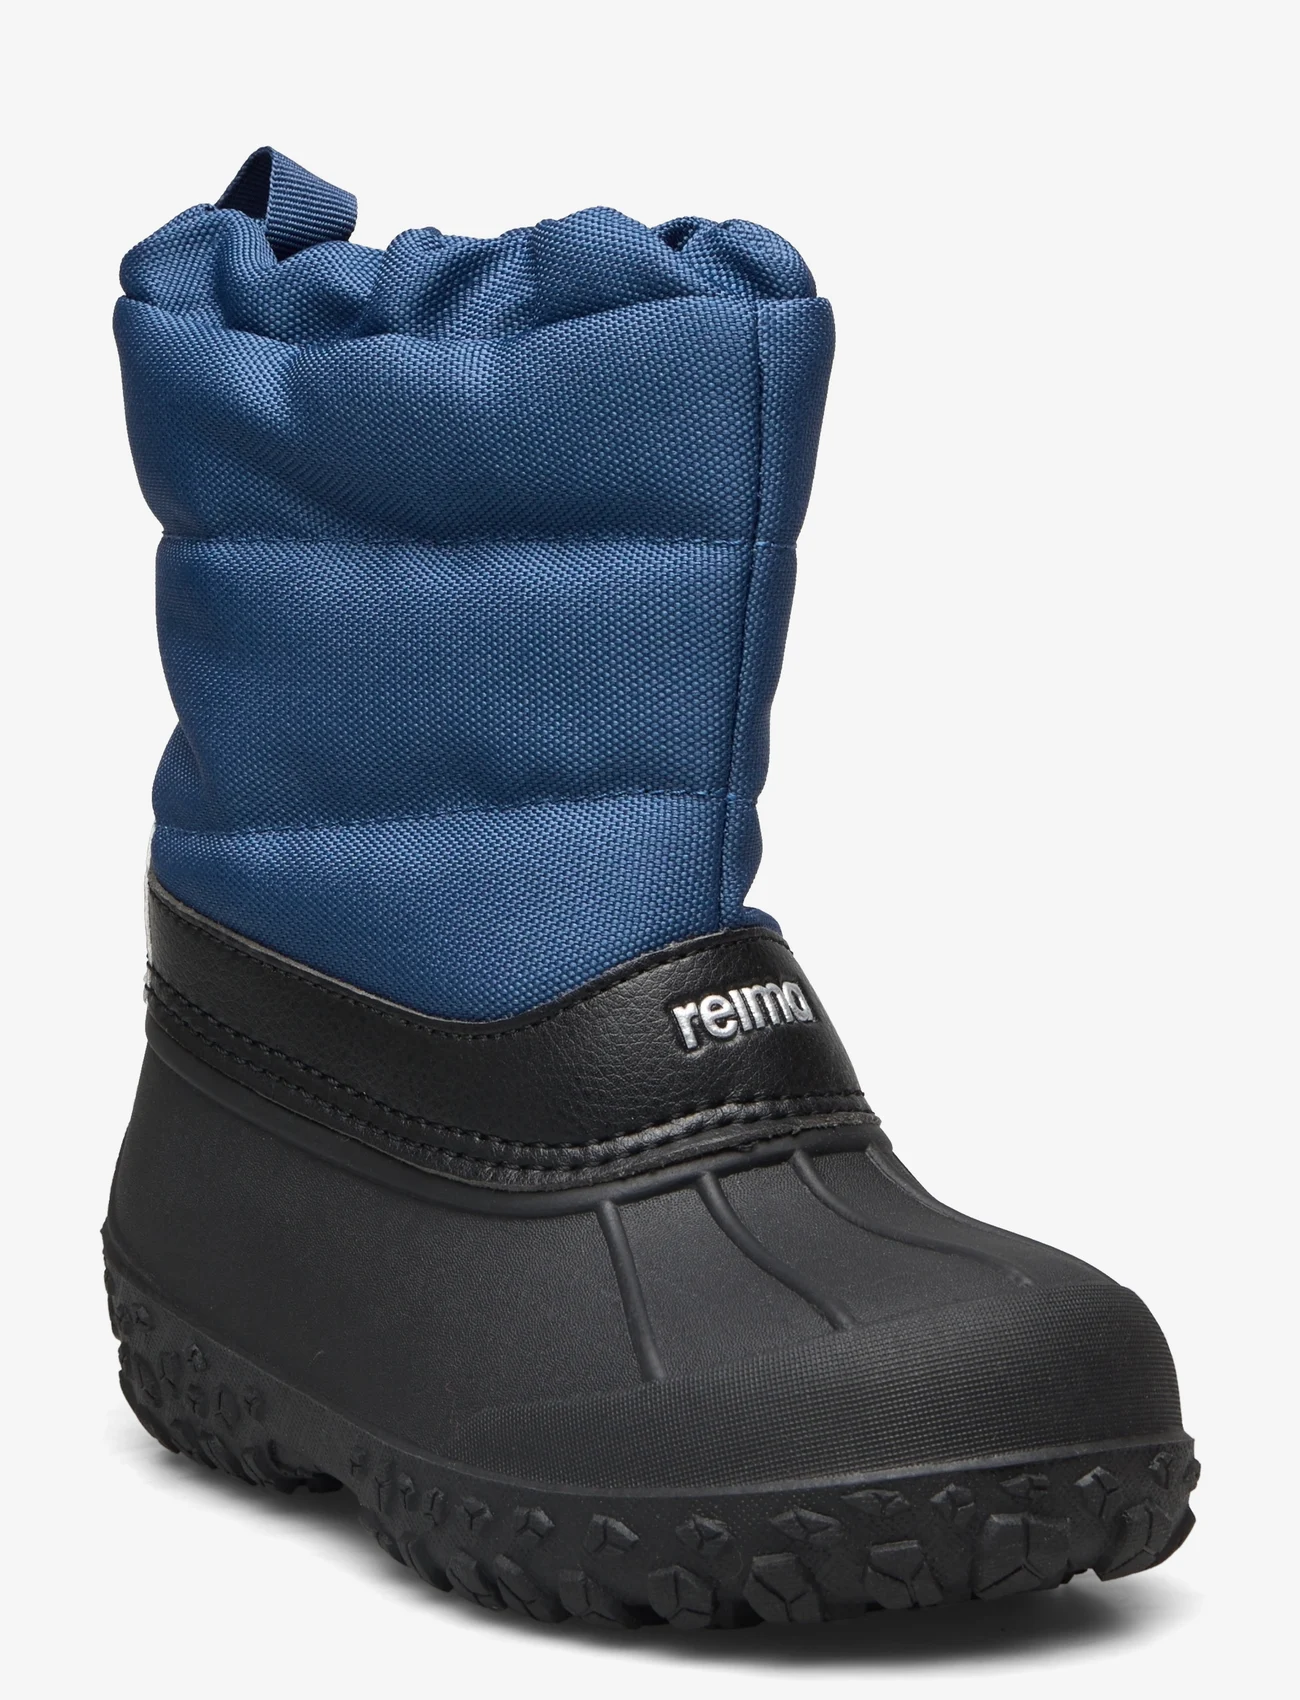 Reima - Winter boots, Loskari - børn - blue - 0